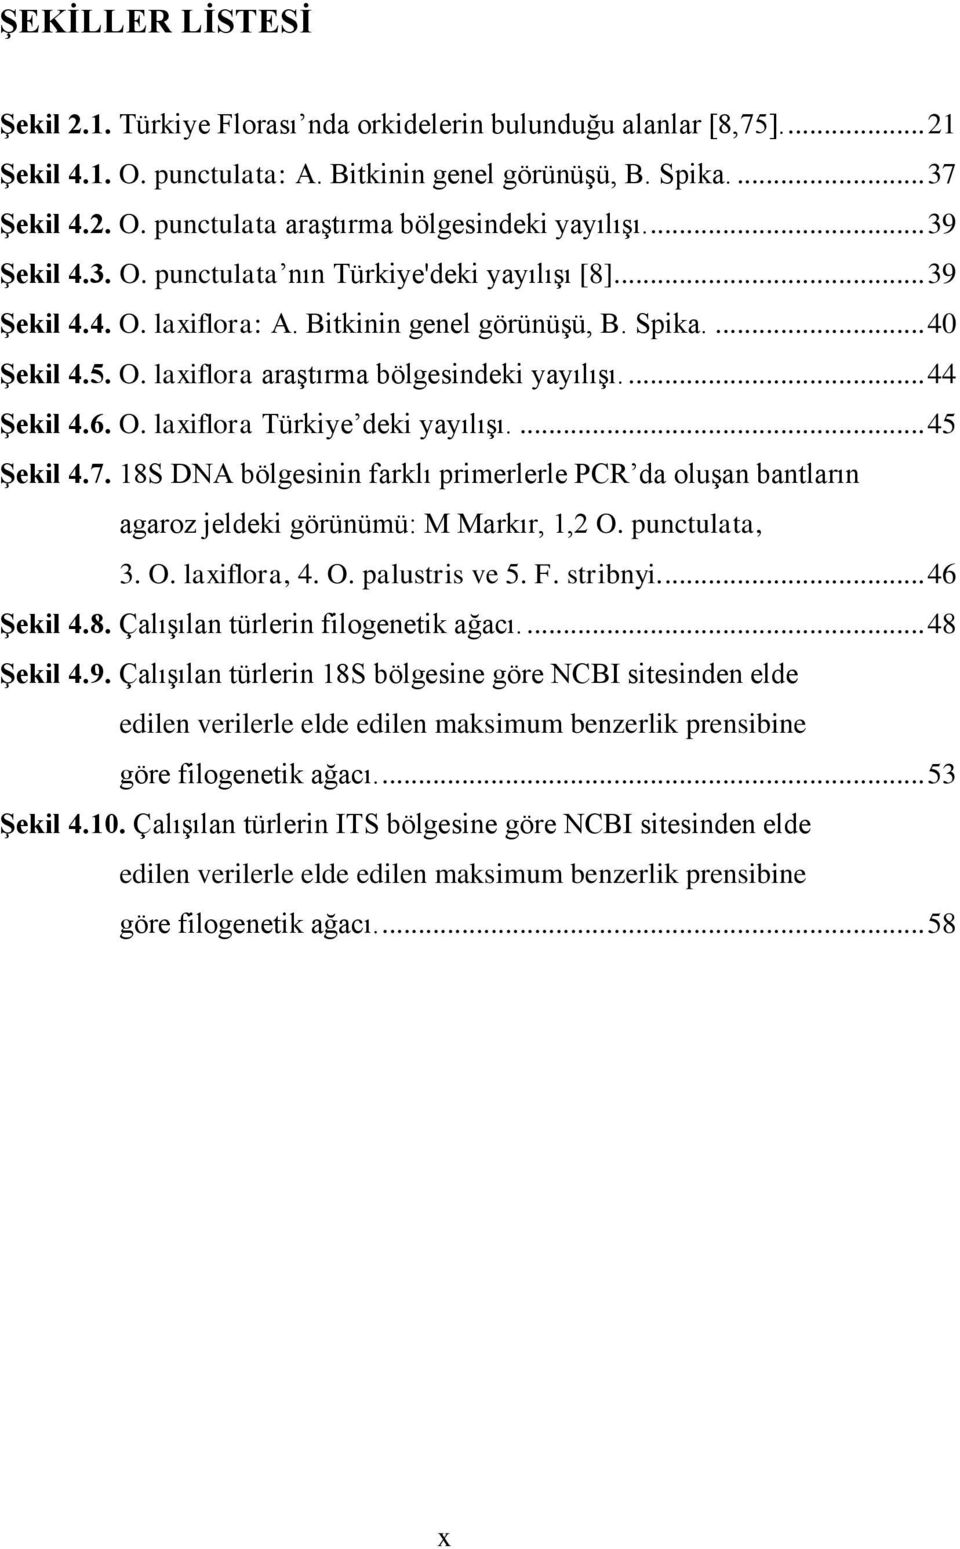 ... 44 Şekil 4.6. O. laxiflora Türkiye deki yayılışı.... 45 Şekil 4.7. 18S DNA bölgesinin farklı primerlerle PCR da oluşan bantların agaroz jeldeki görünümü: M Markır, 1,2 O. punctulata, 3. O. laxiflora, 4.